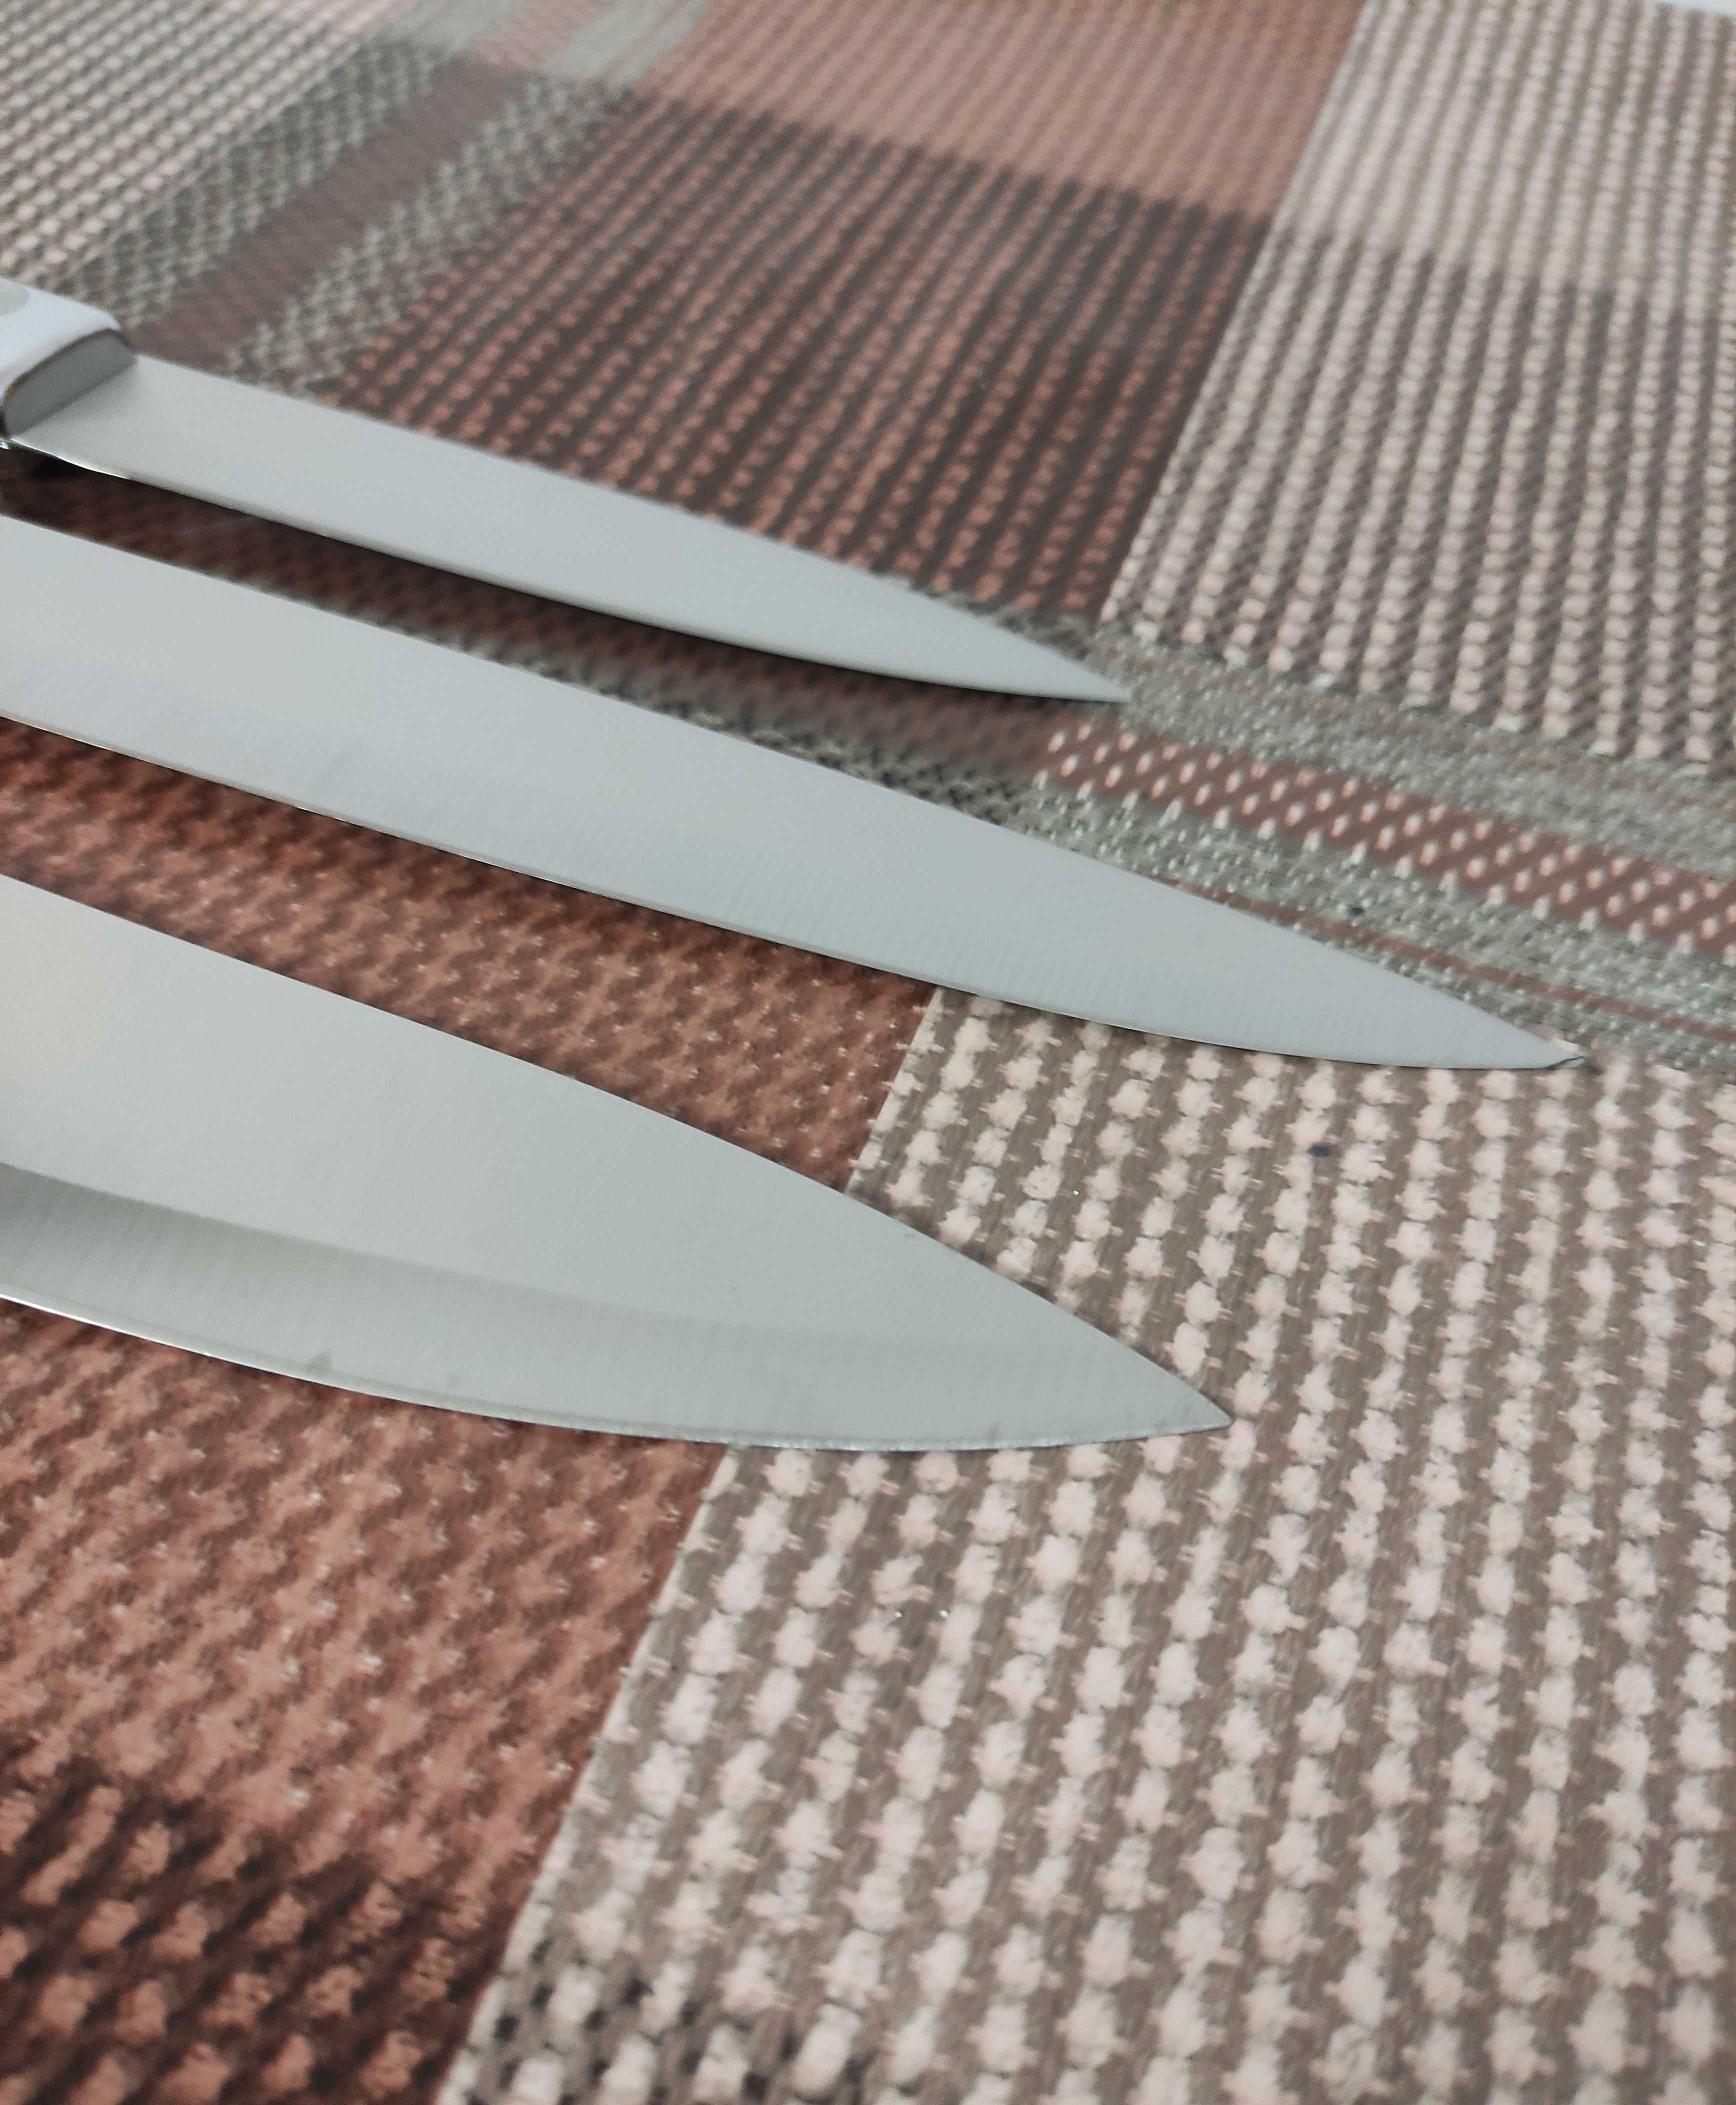 Кухонні ножі набір ножів гострі ножі